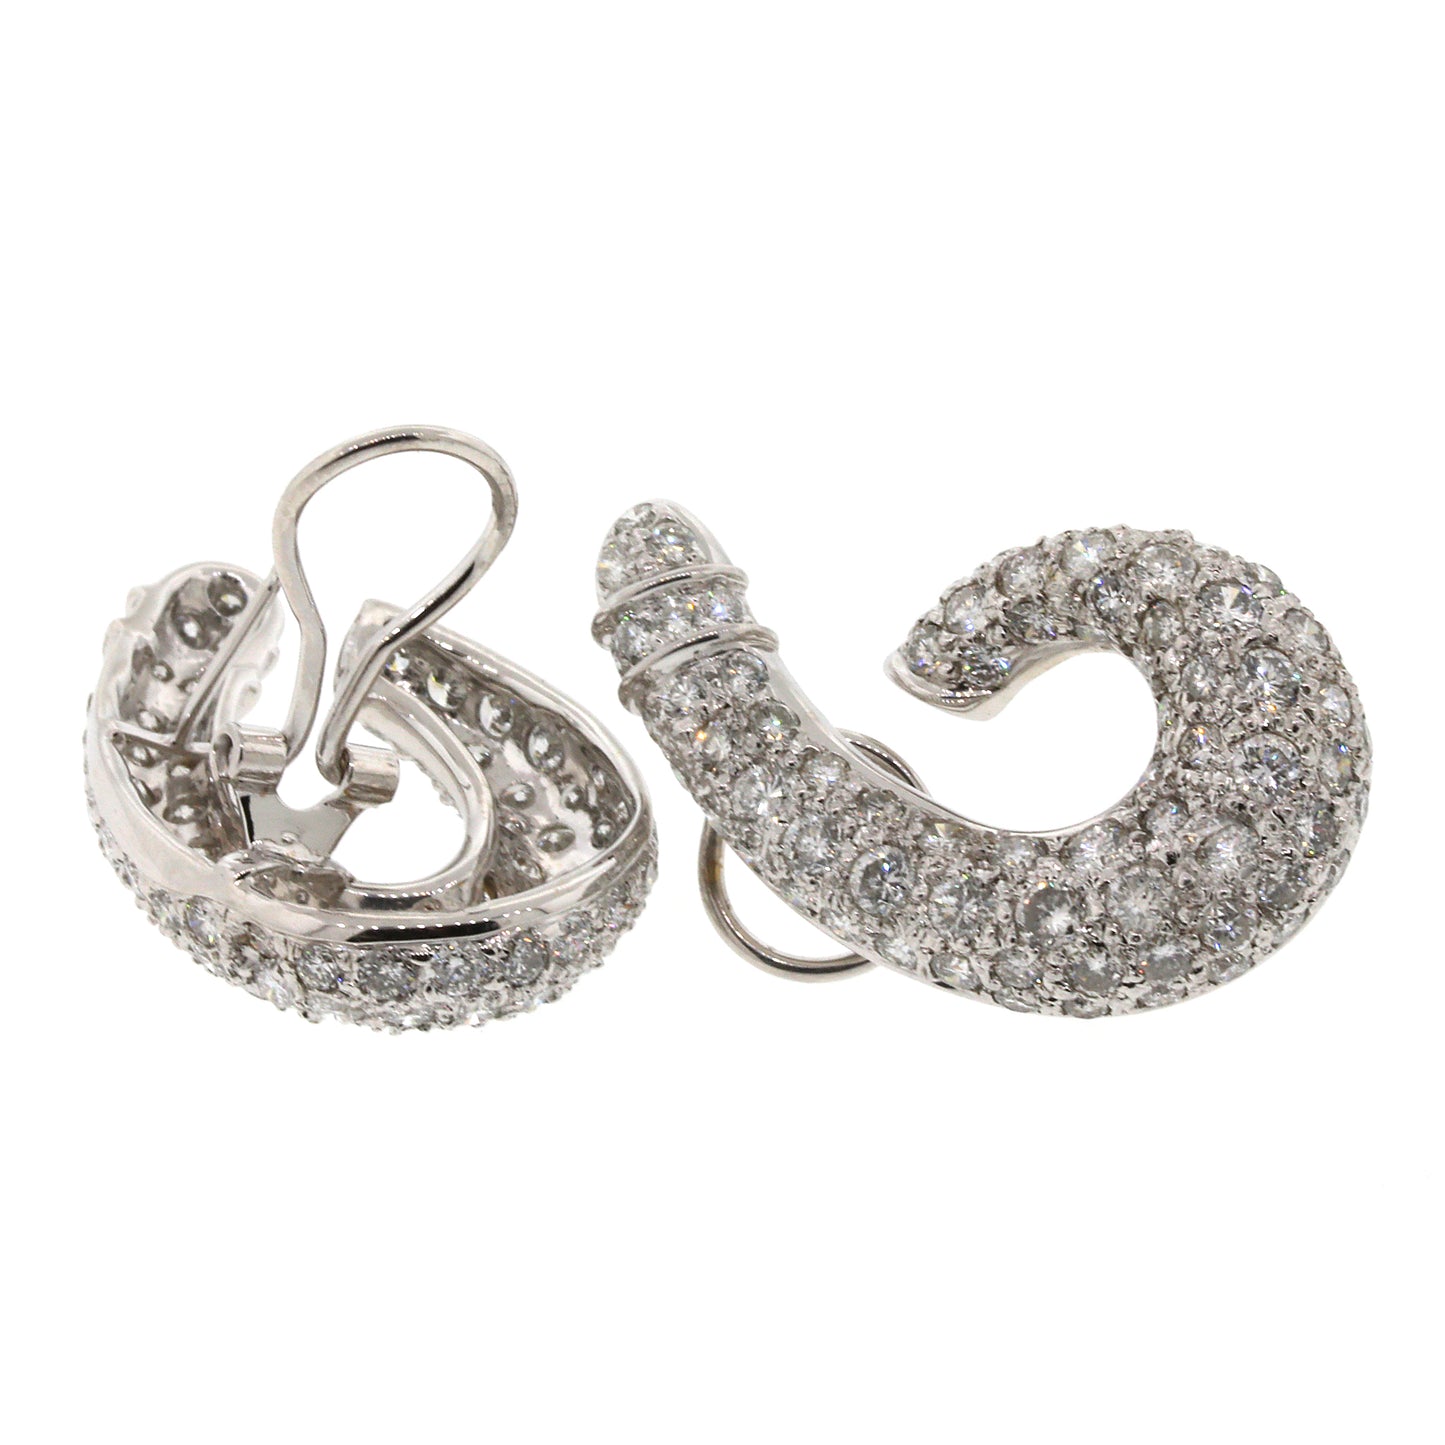 J-Shaped Pave Diamond Earrings